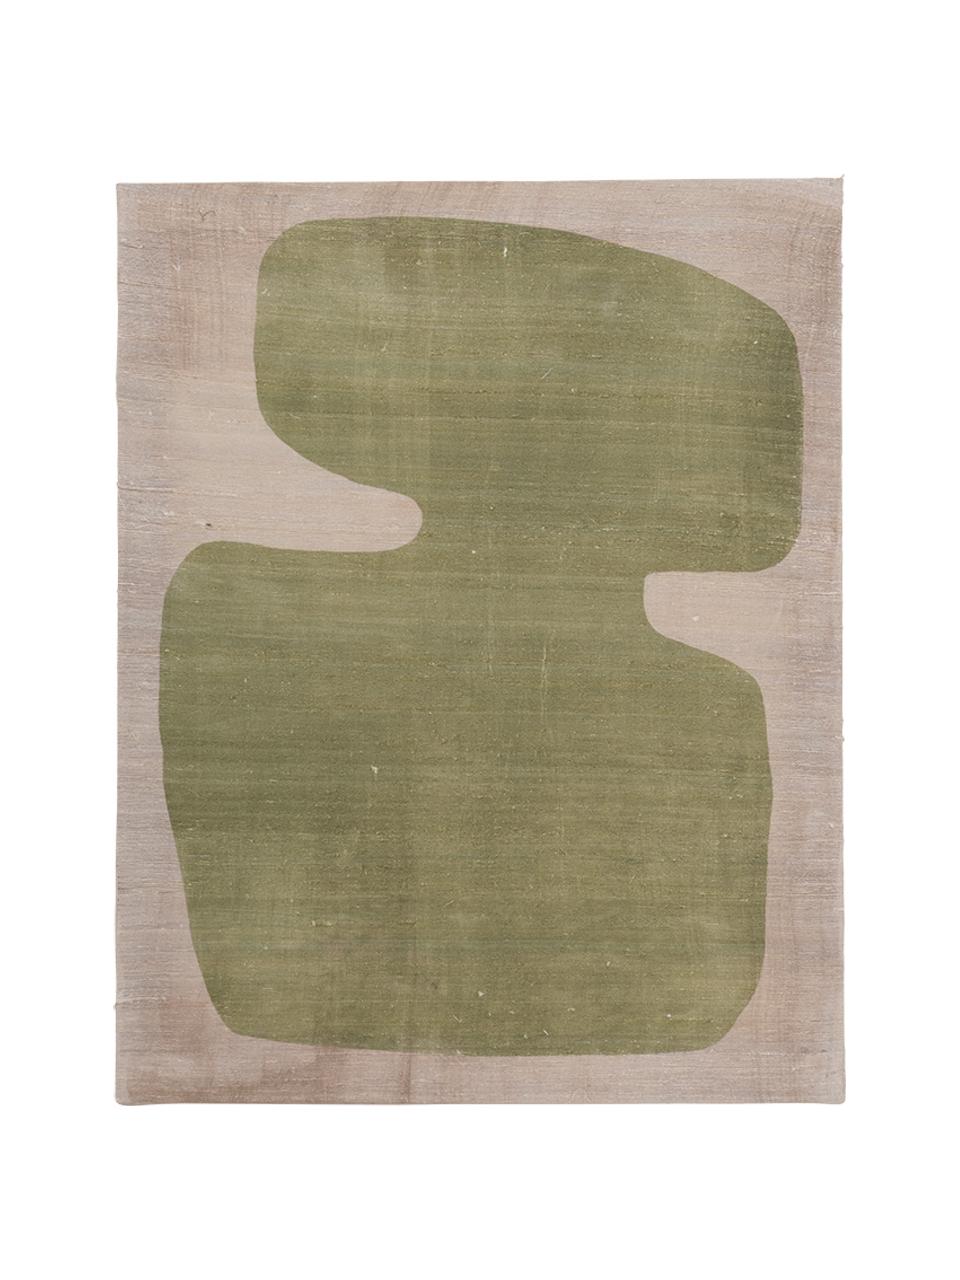 Dekoracja ścienna z jedwabiu Minimalism, Jedwab, Zielony, beżowy, S 50 x W 65 cm